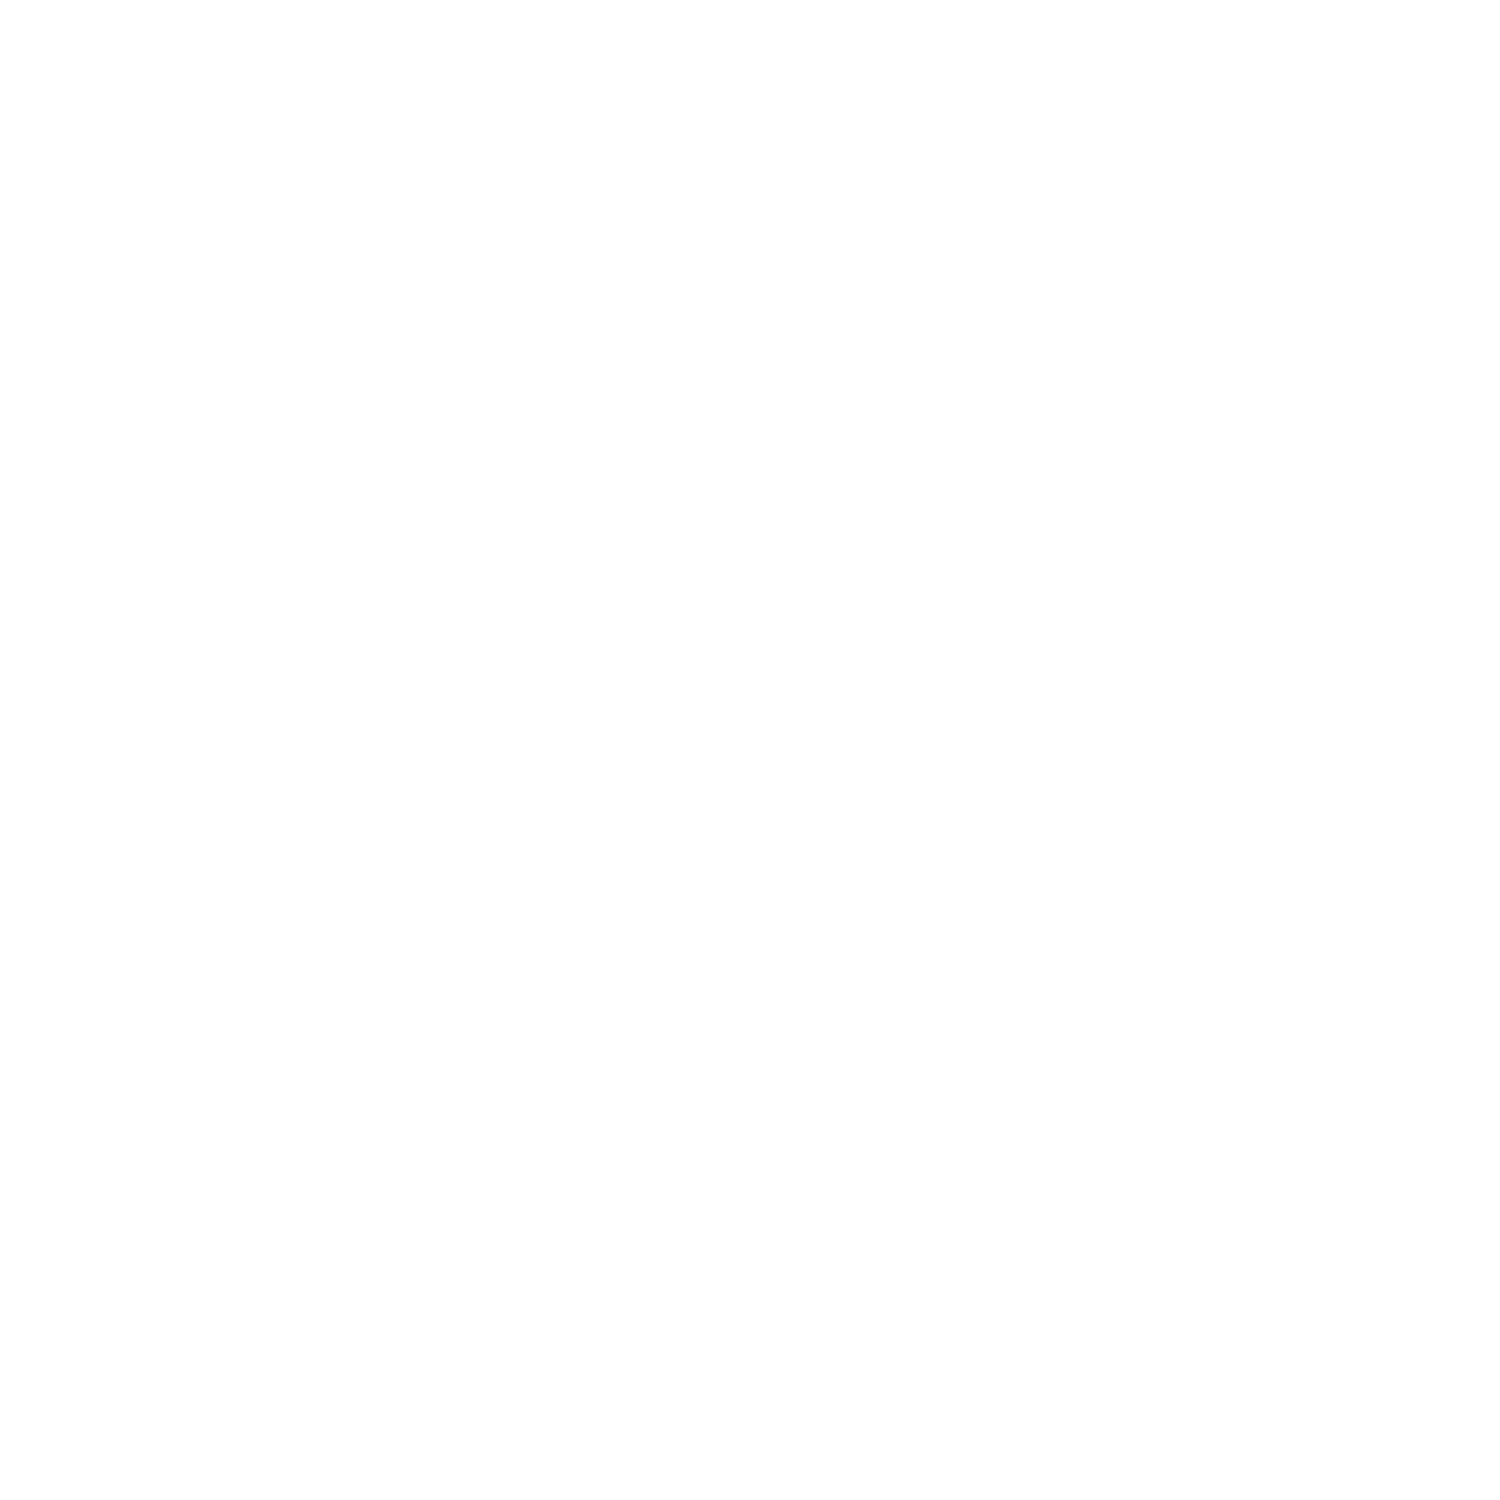 Park Avenue Doctors